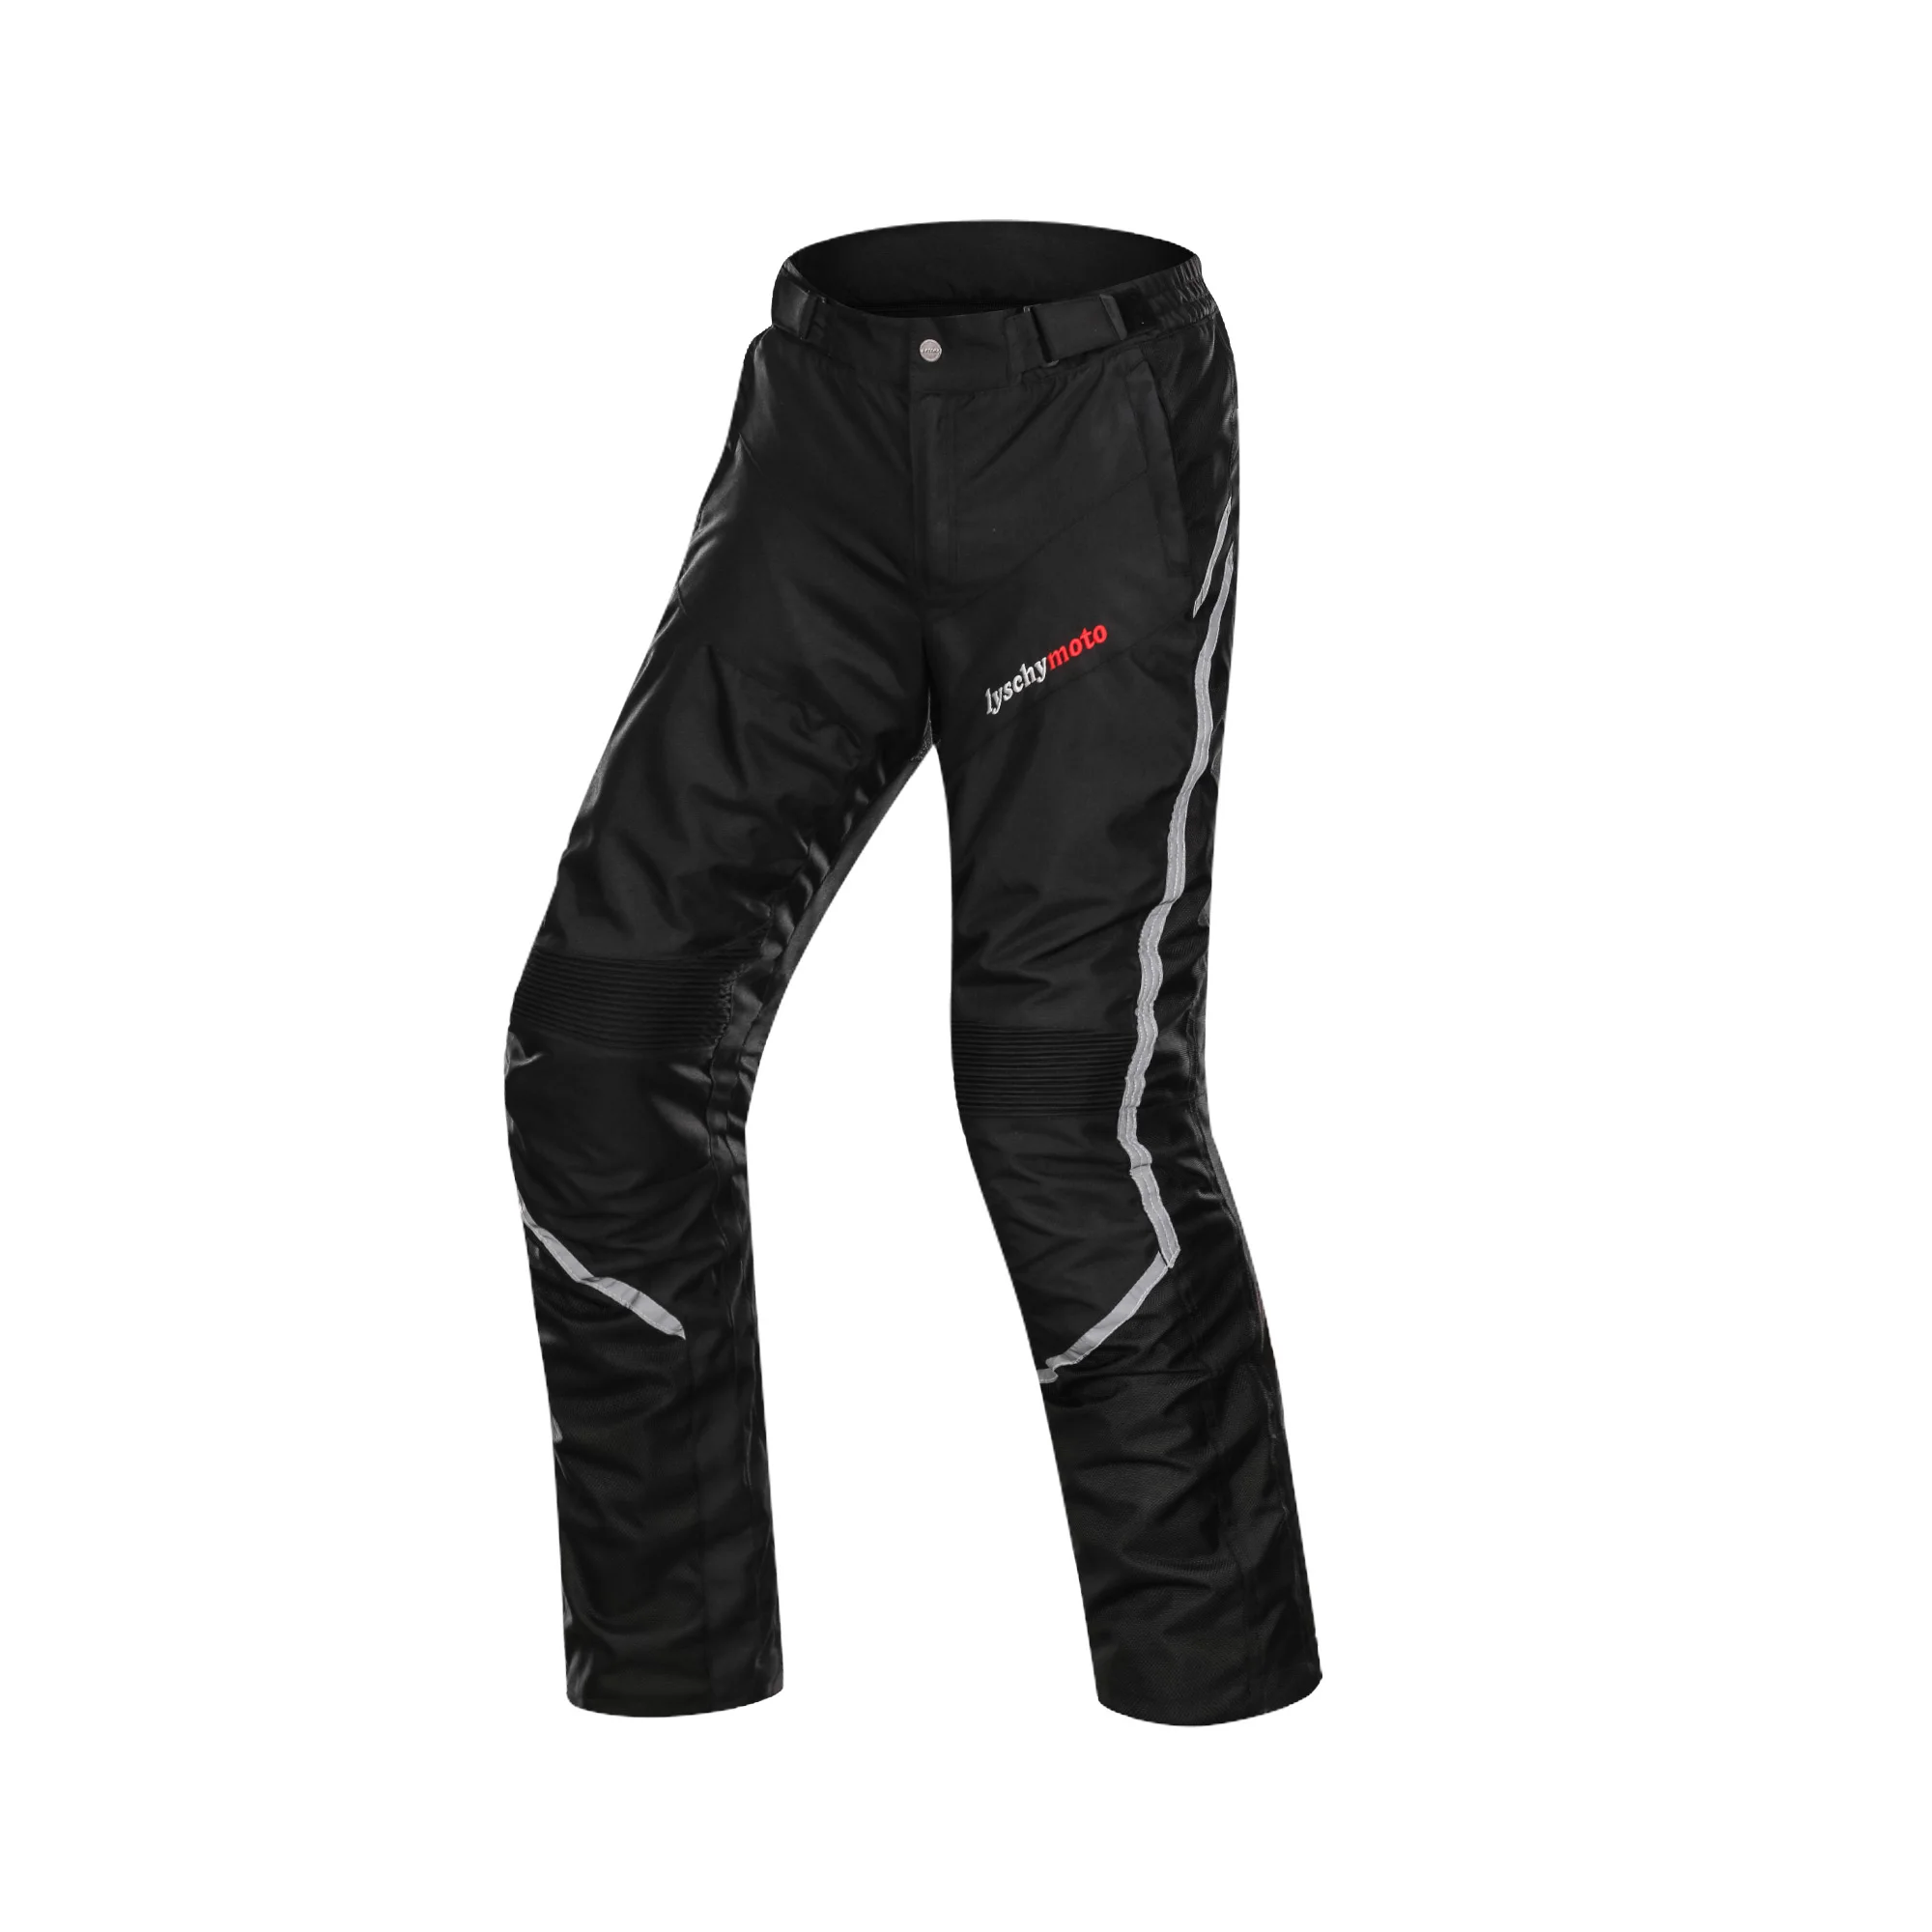 LYSCHY летняя мотоциклетная куртка detecable Chaqueta Moto куртка Водонепроницаемая дышащая сетка мото брюки костюм защитное снаряжение - Цвет: LY-Pants Black